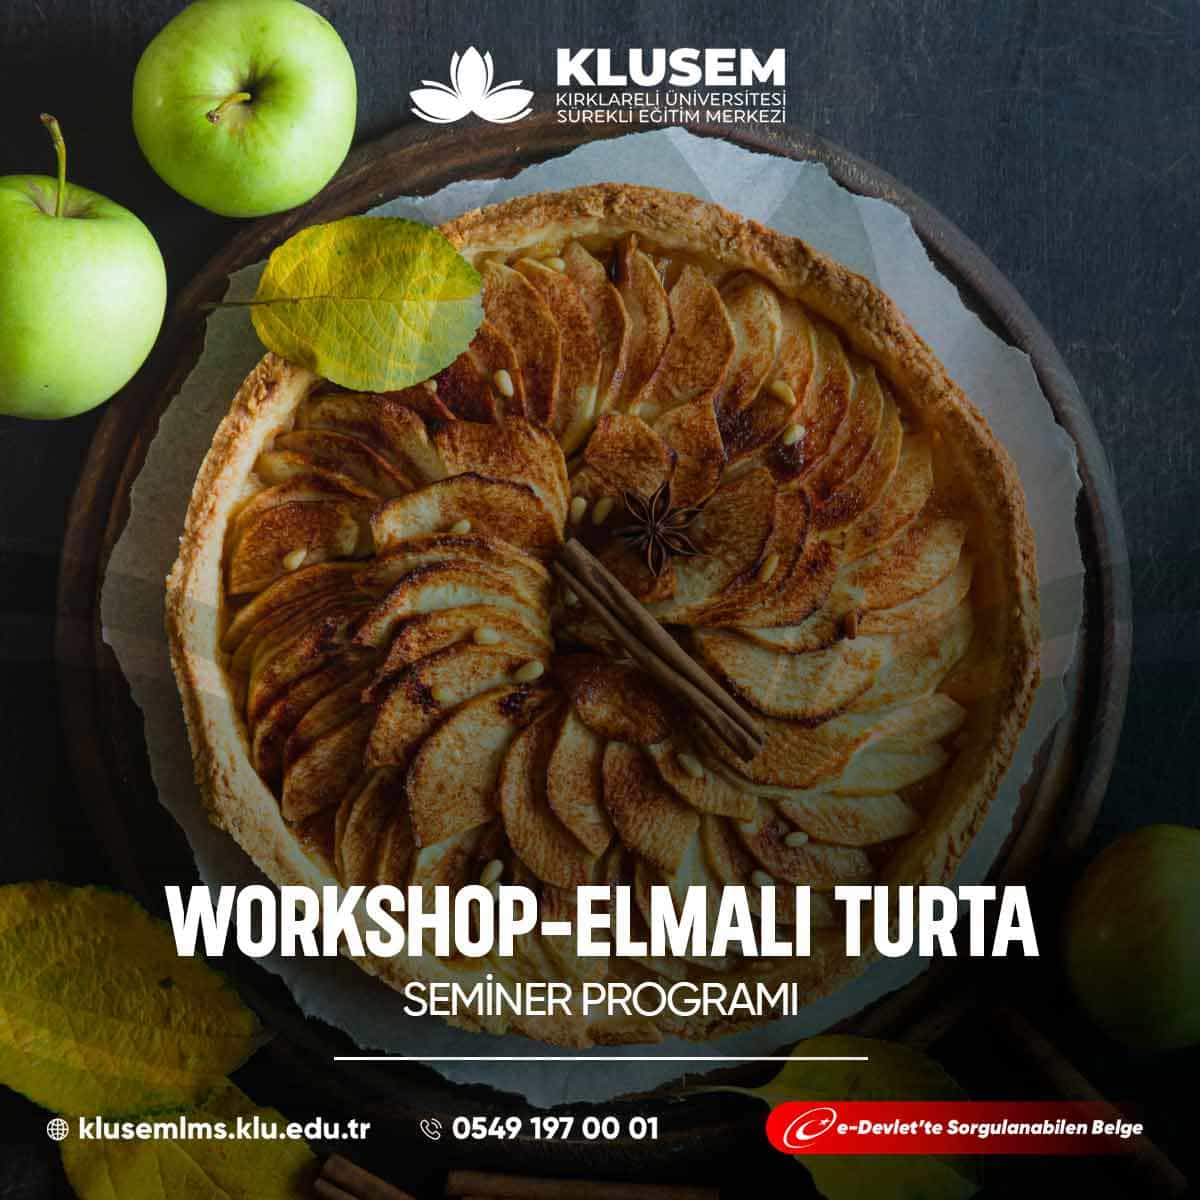 Workshop - Elmalı Turta Semineri